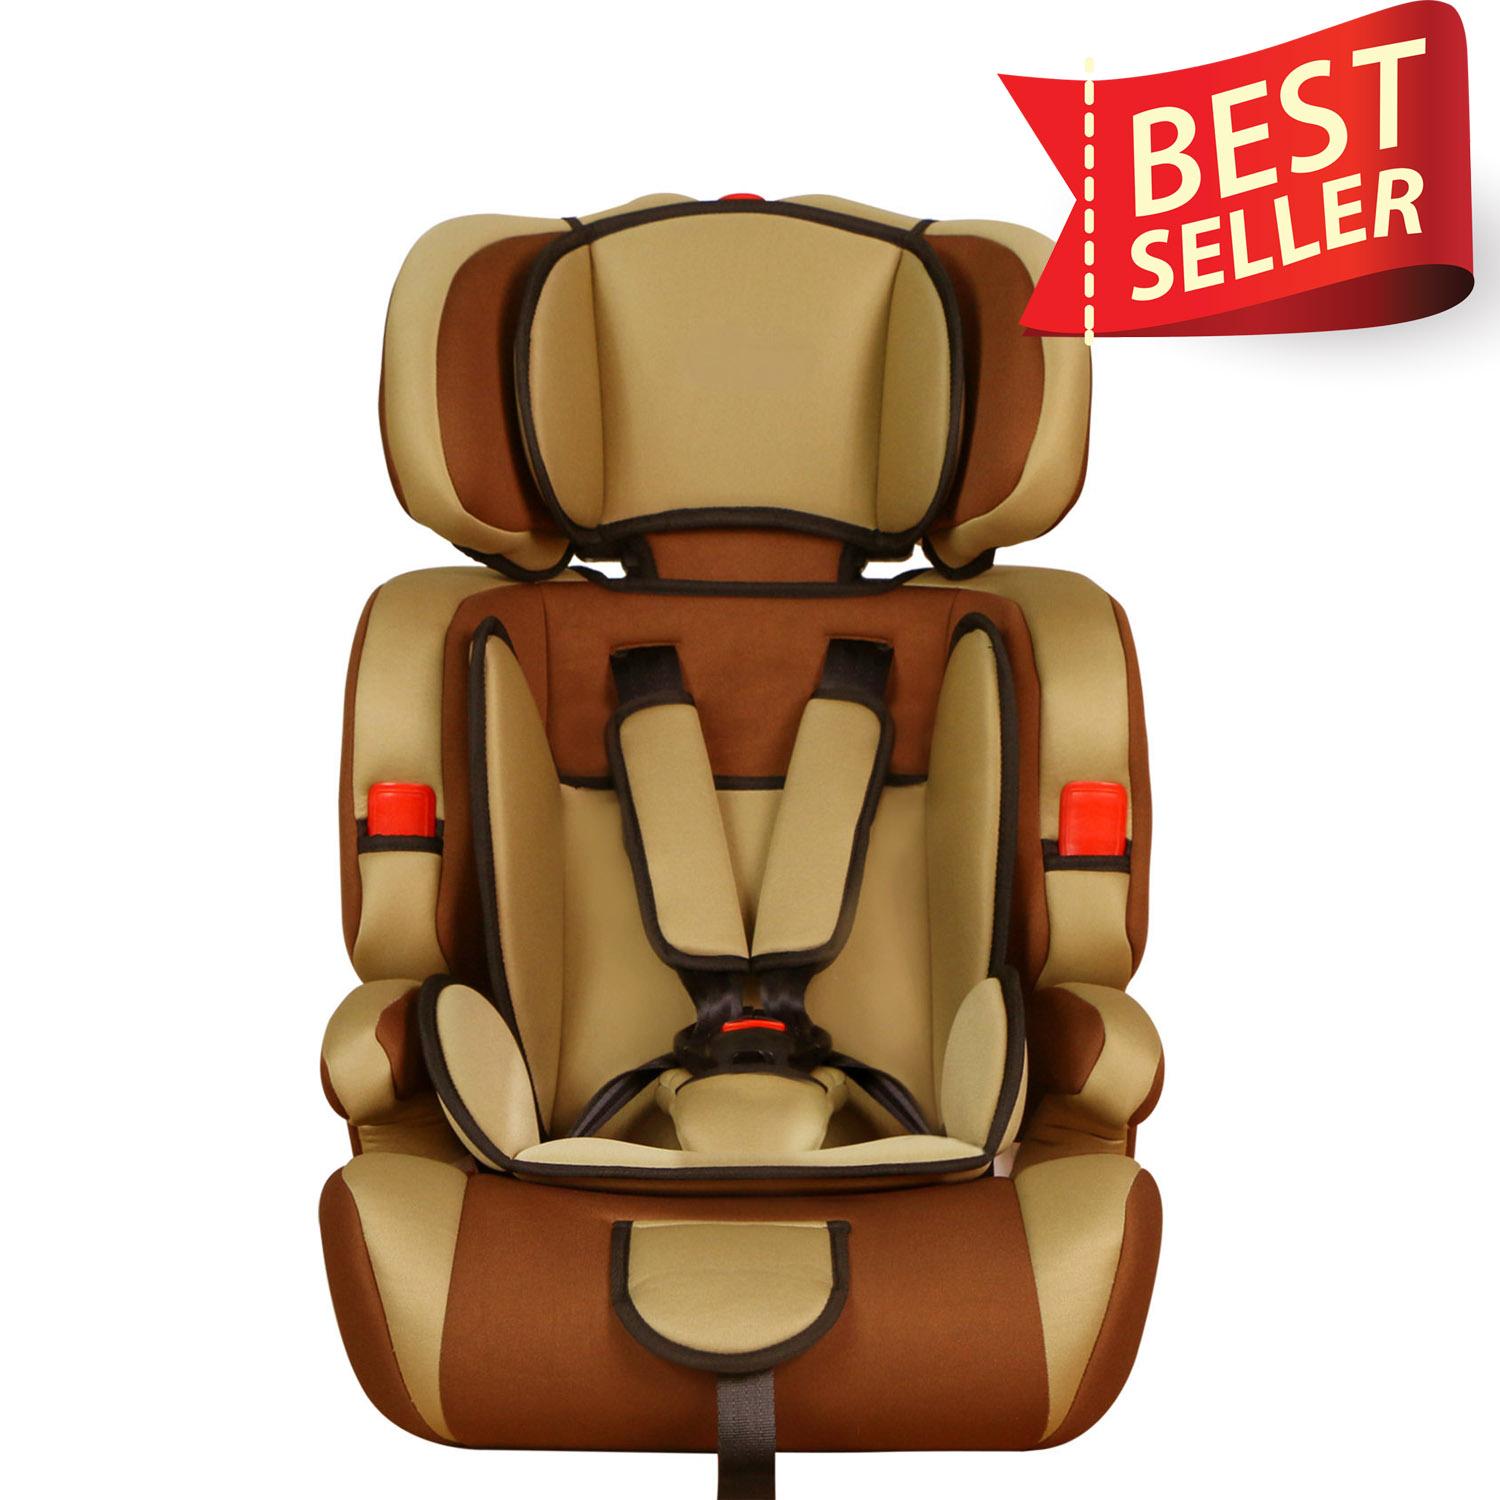 คาร์ซีท(car seat) ที่นั่งในรถยนต์ขนาดใหญ่พิเศษ พนักรองคอปรับระดับได้ รุ่น:SQ303